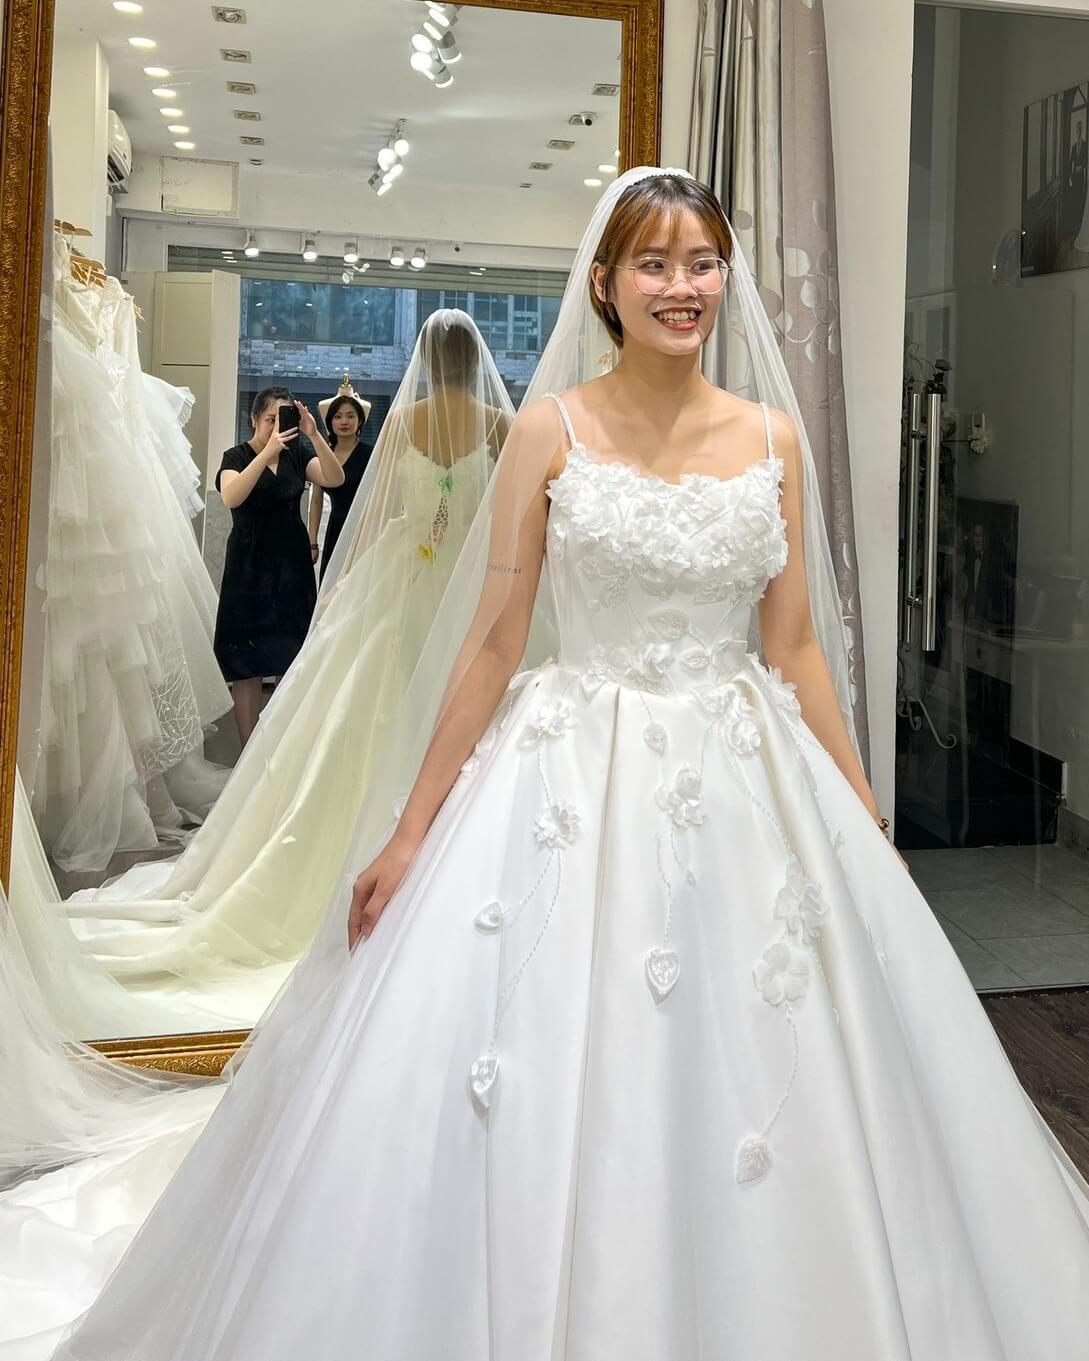 Cùng ông xã tương lai đi thử váy cưới, Thu Thủy dính ngay nghi vấn cưới  chạy bầu bởi…